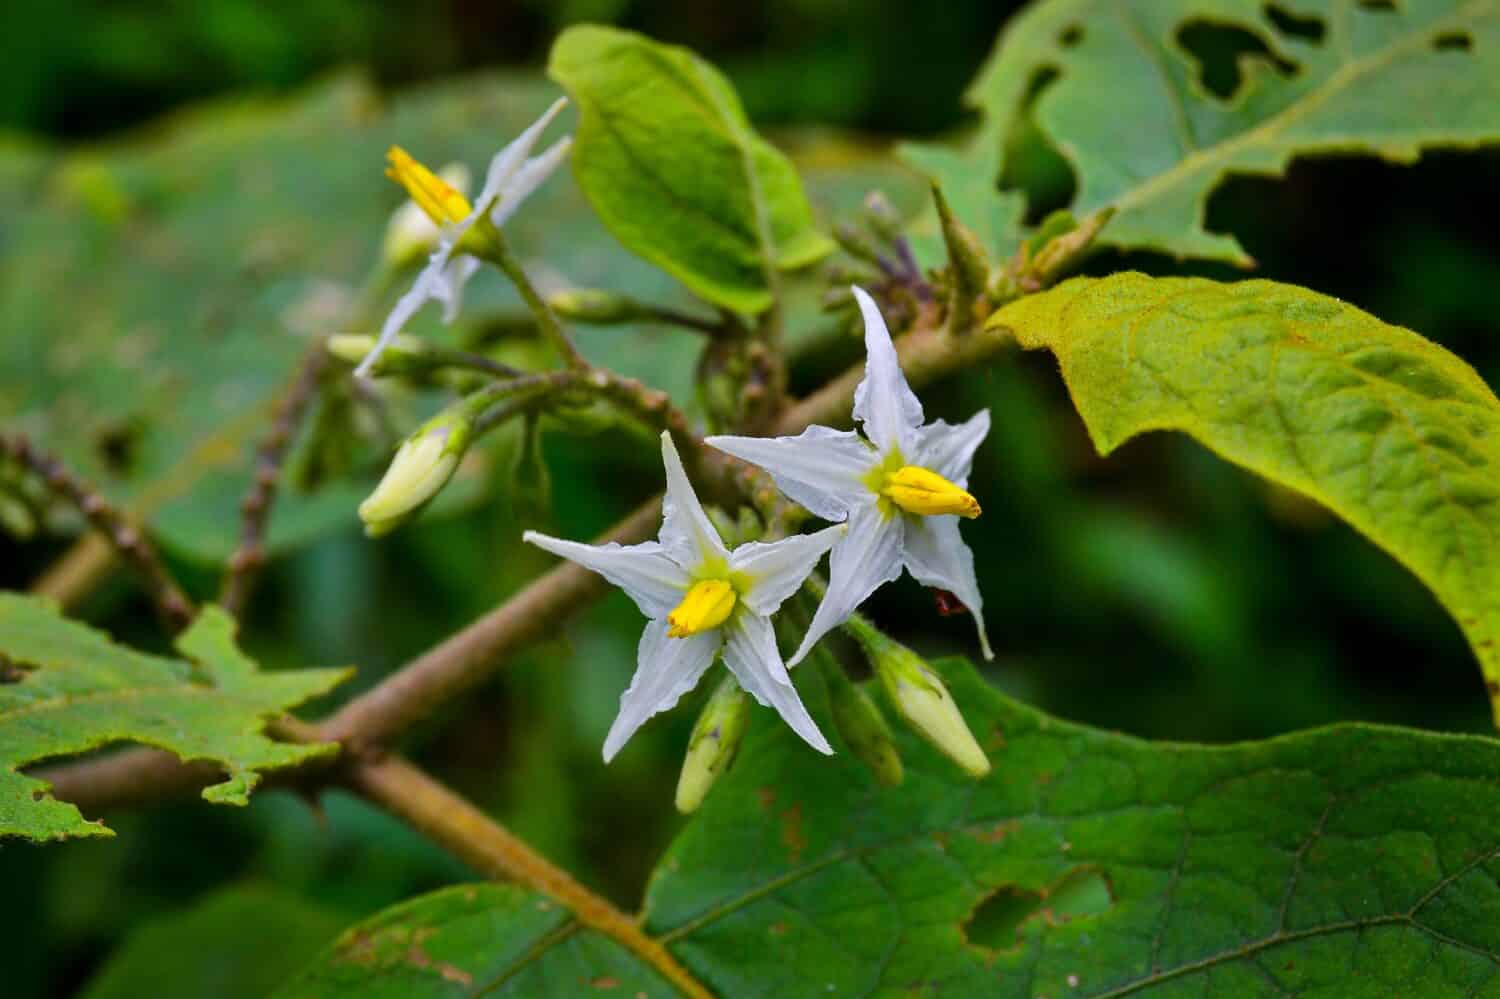 Solanum carolinense, ortica del cavallo della Carolina, non è una vera ortica, ma un membro della famiglia delle Solanacee, o belladonna.  È una pianta erbacea perenne, originaria del sud-est degli Stati Uniti